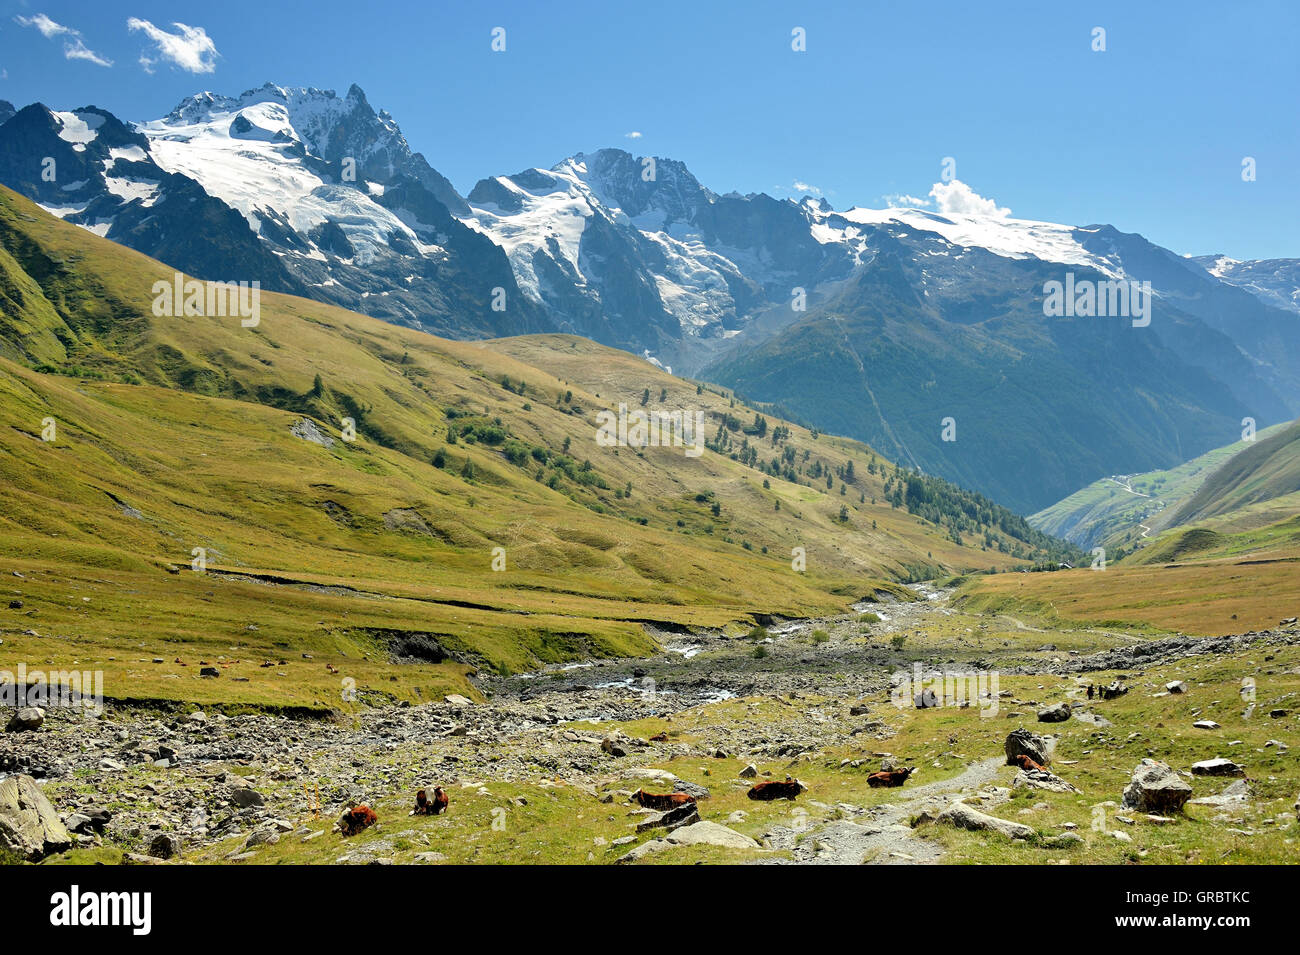 Atemberaubende Panorama-Landschaft von Schnee bedeckt, Berge und grüne Alp mit Kühen, Französische Alpen, Frankreich Stockfoto